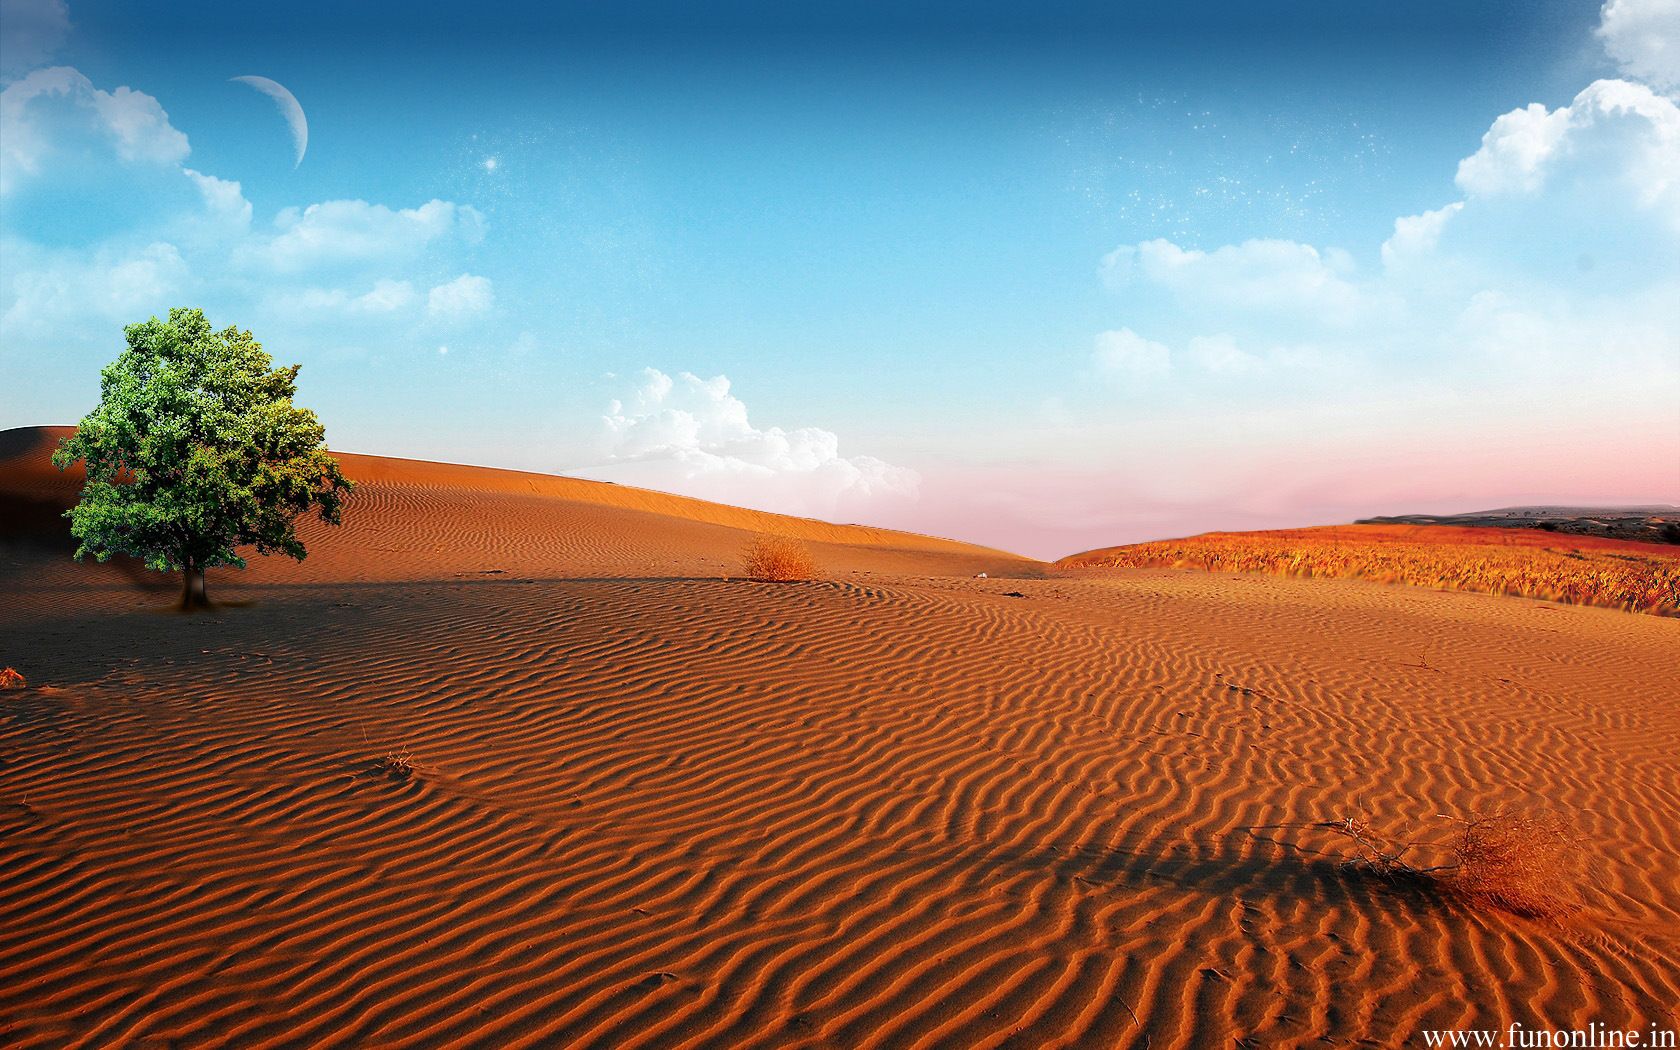 Sandy Desert